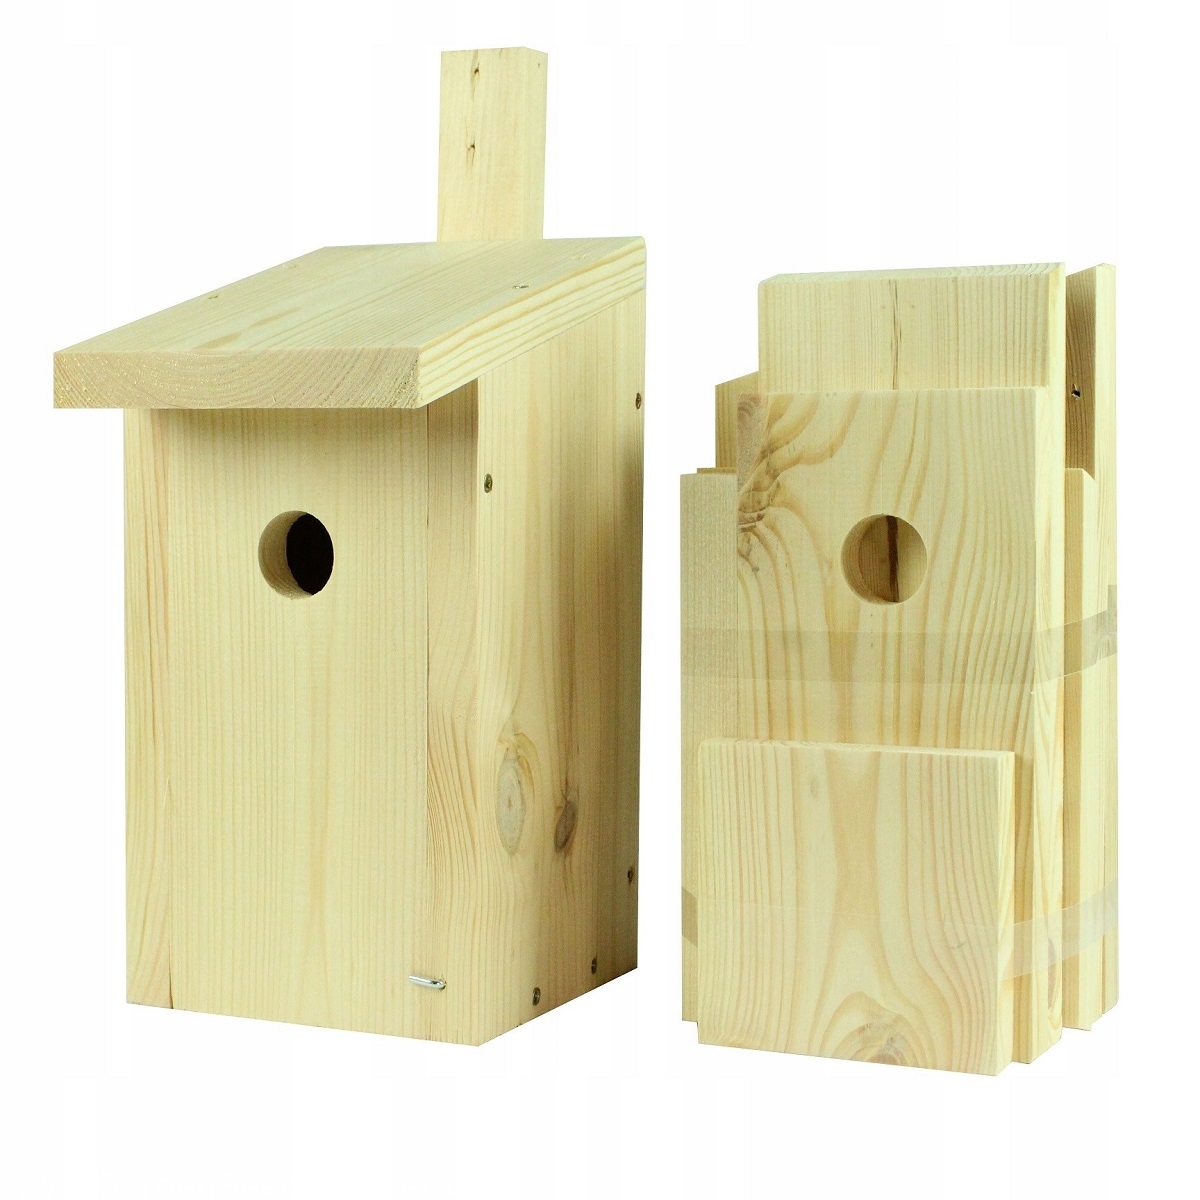 Tit og træspurv reden kasse - rå træ - selvmonteret fuglehus - – Garden  Seeds Market | Gratis fragt